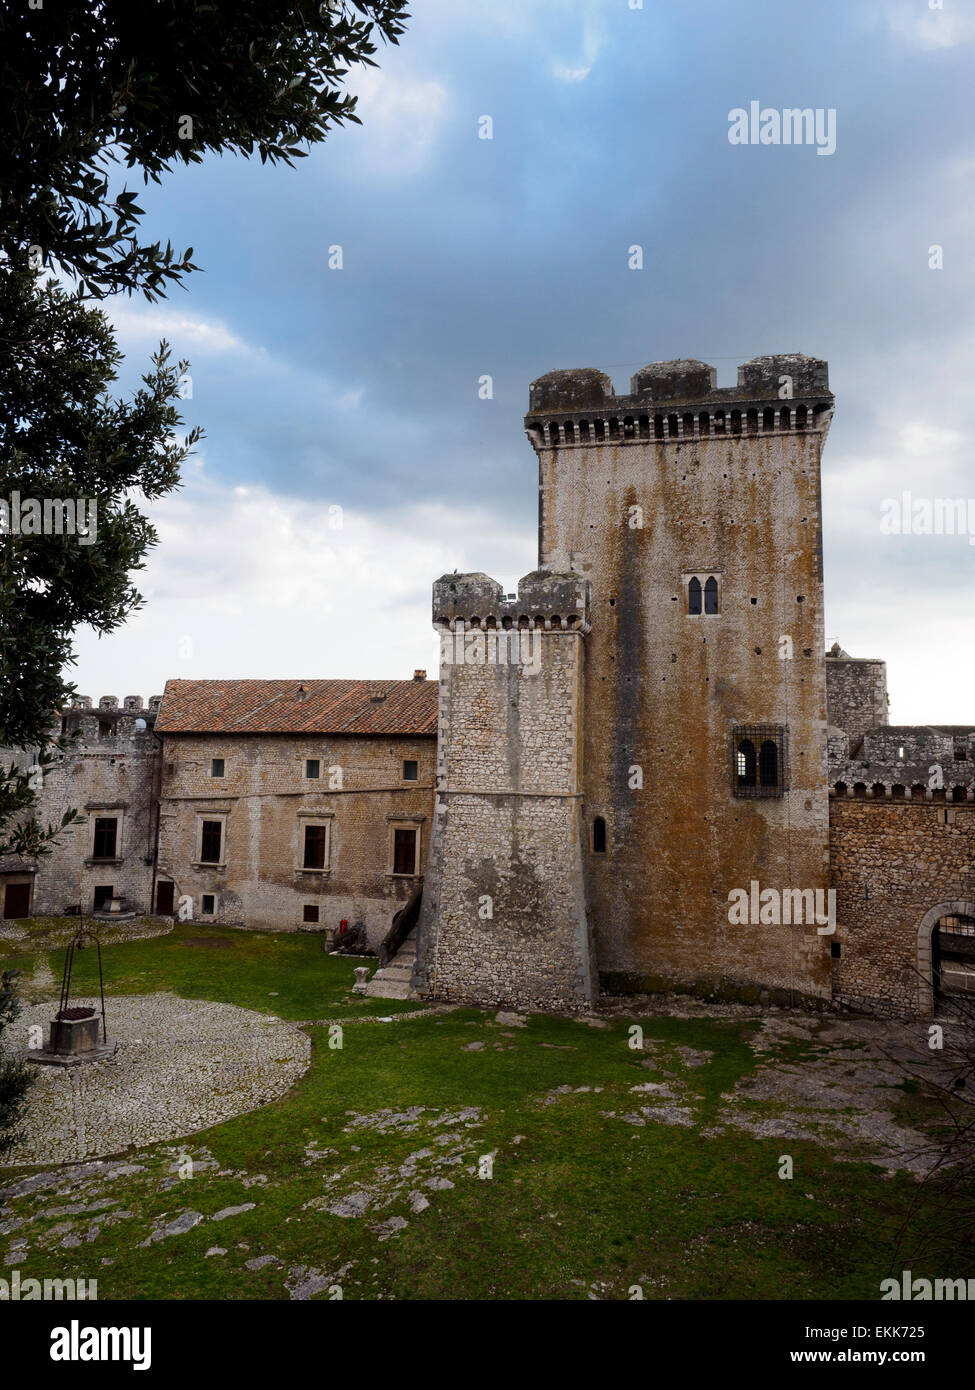 Château Caetani cour dans la ville médiévale de Sermoneta - Latina, Italie Banque D'Images